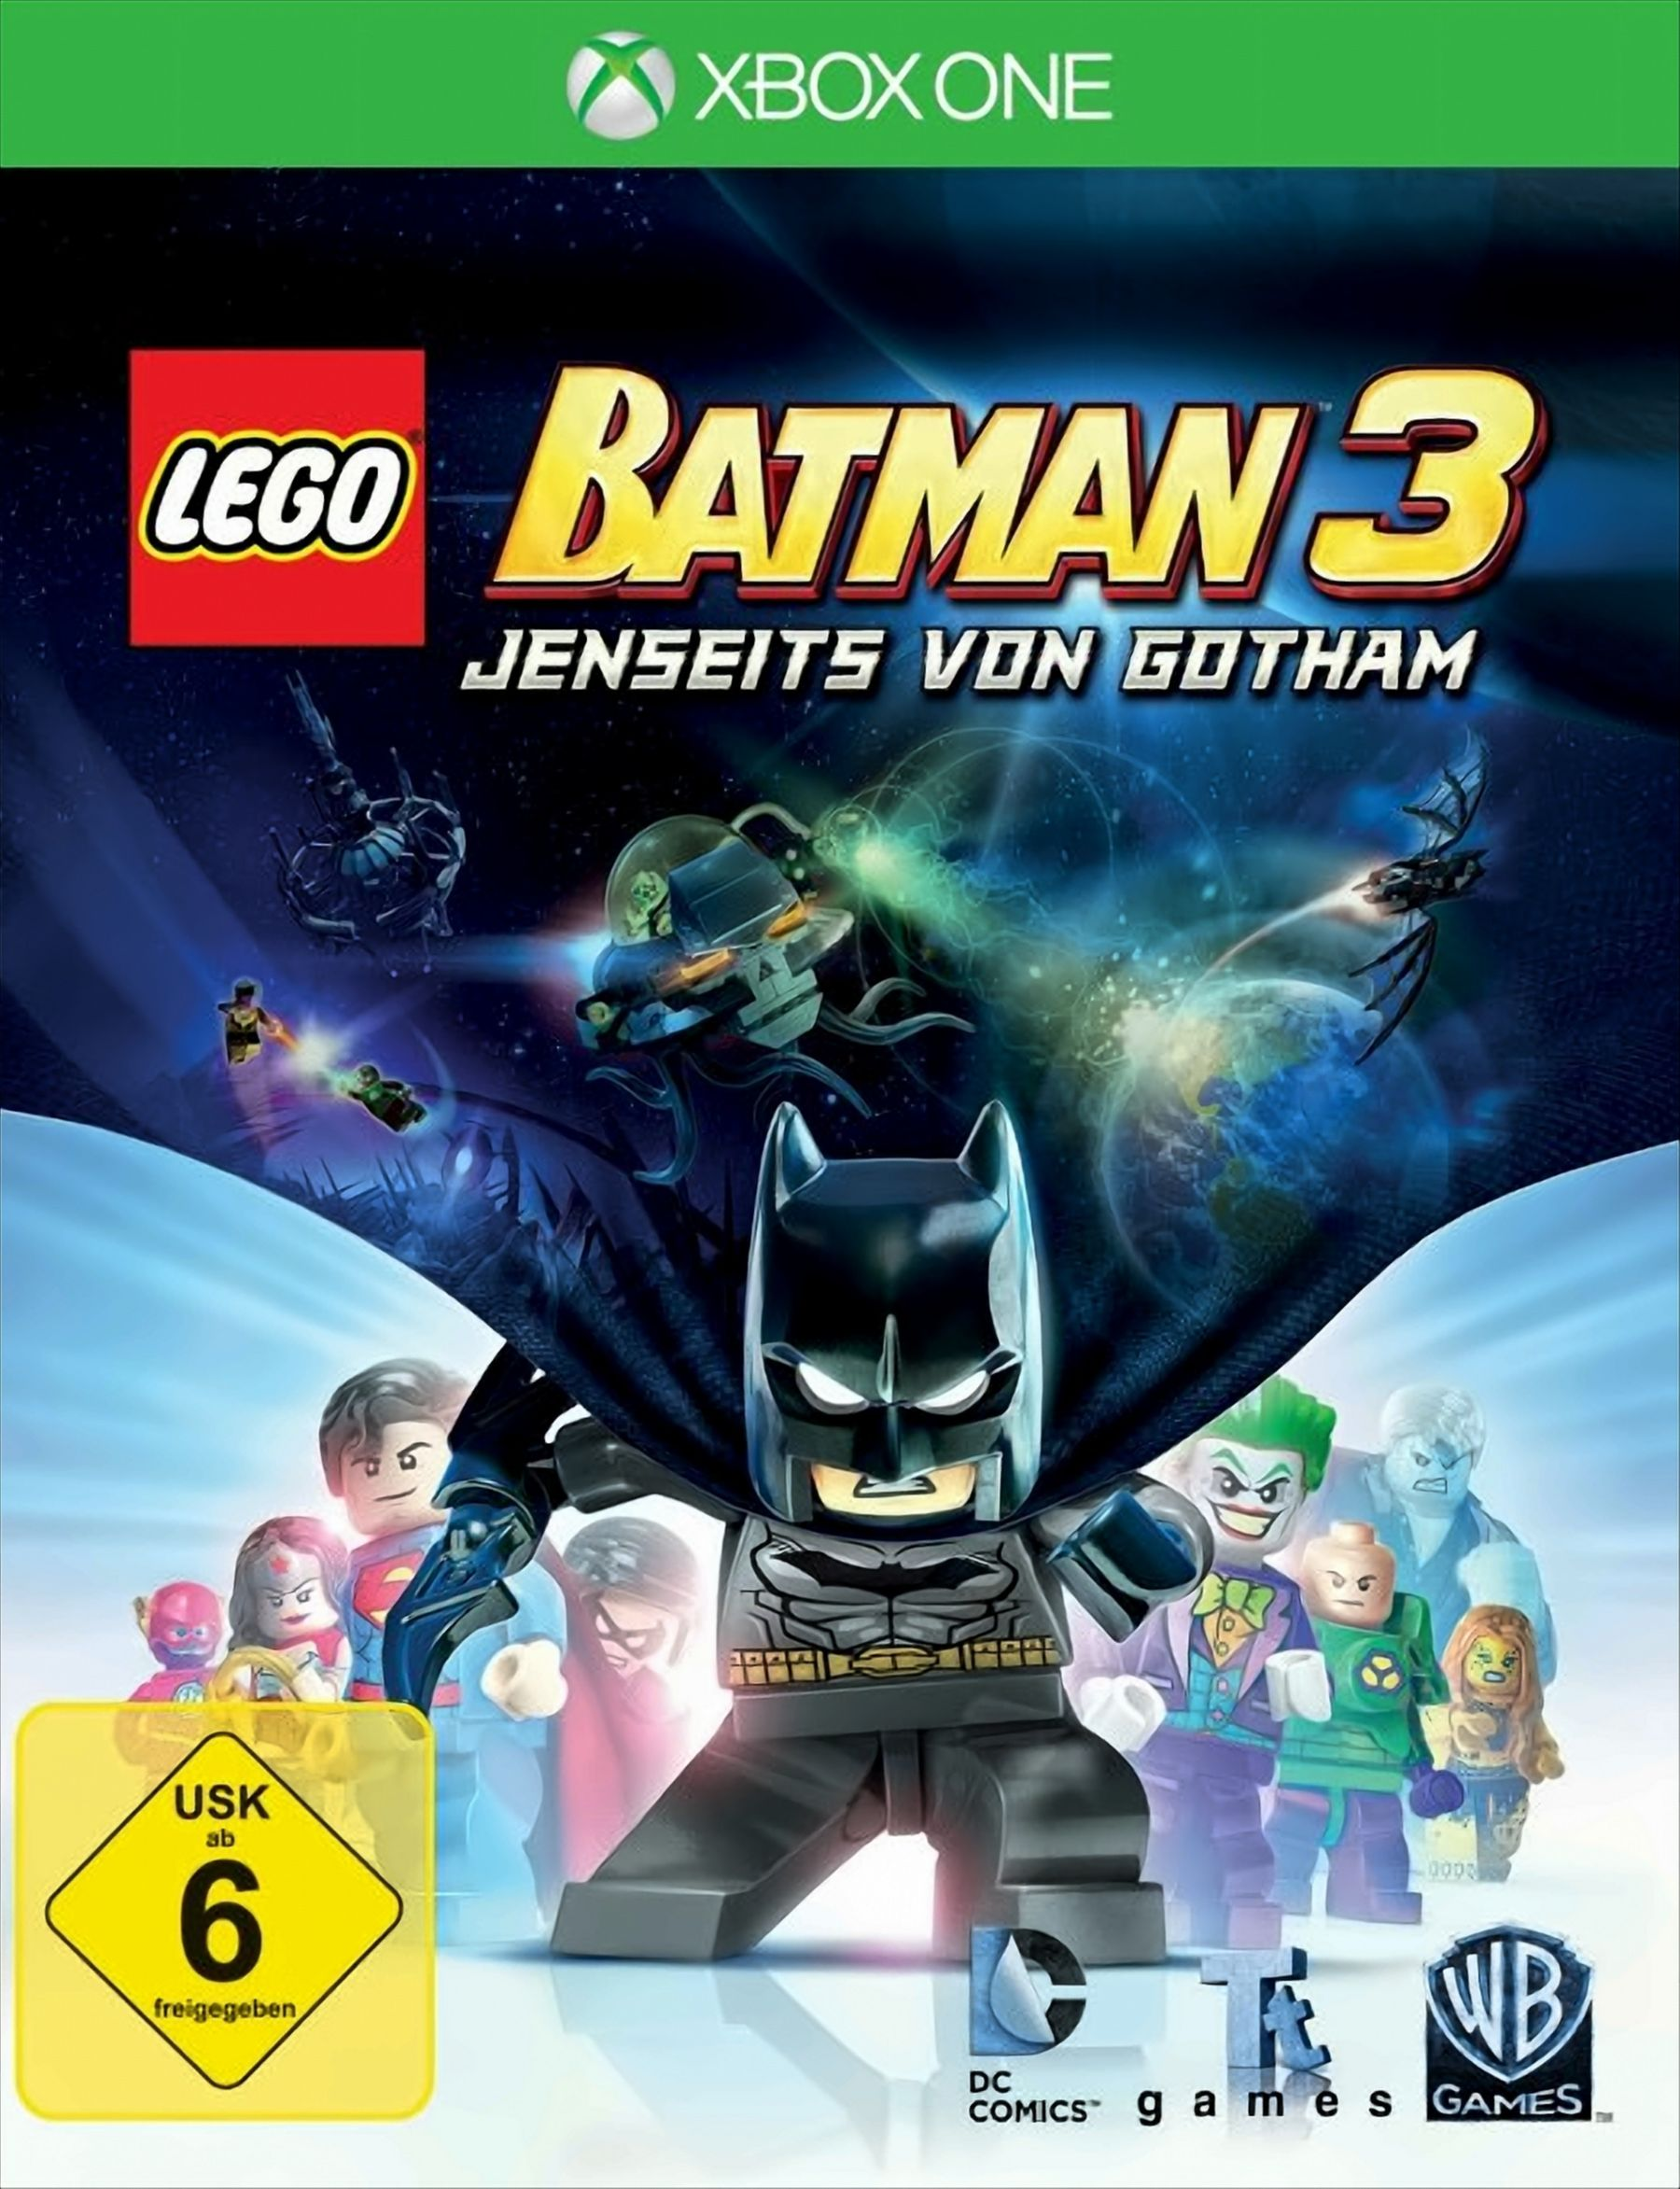 Gotham One] - 3 von Batman Lego [Xbox - Jenseits